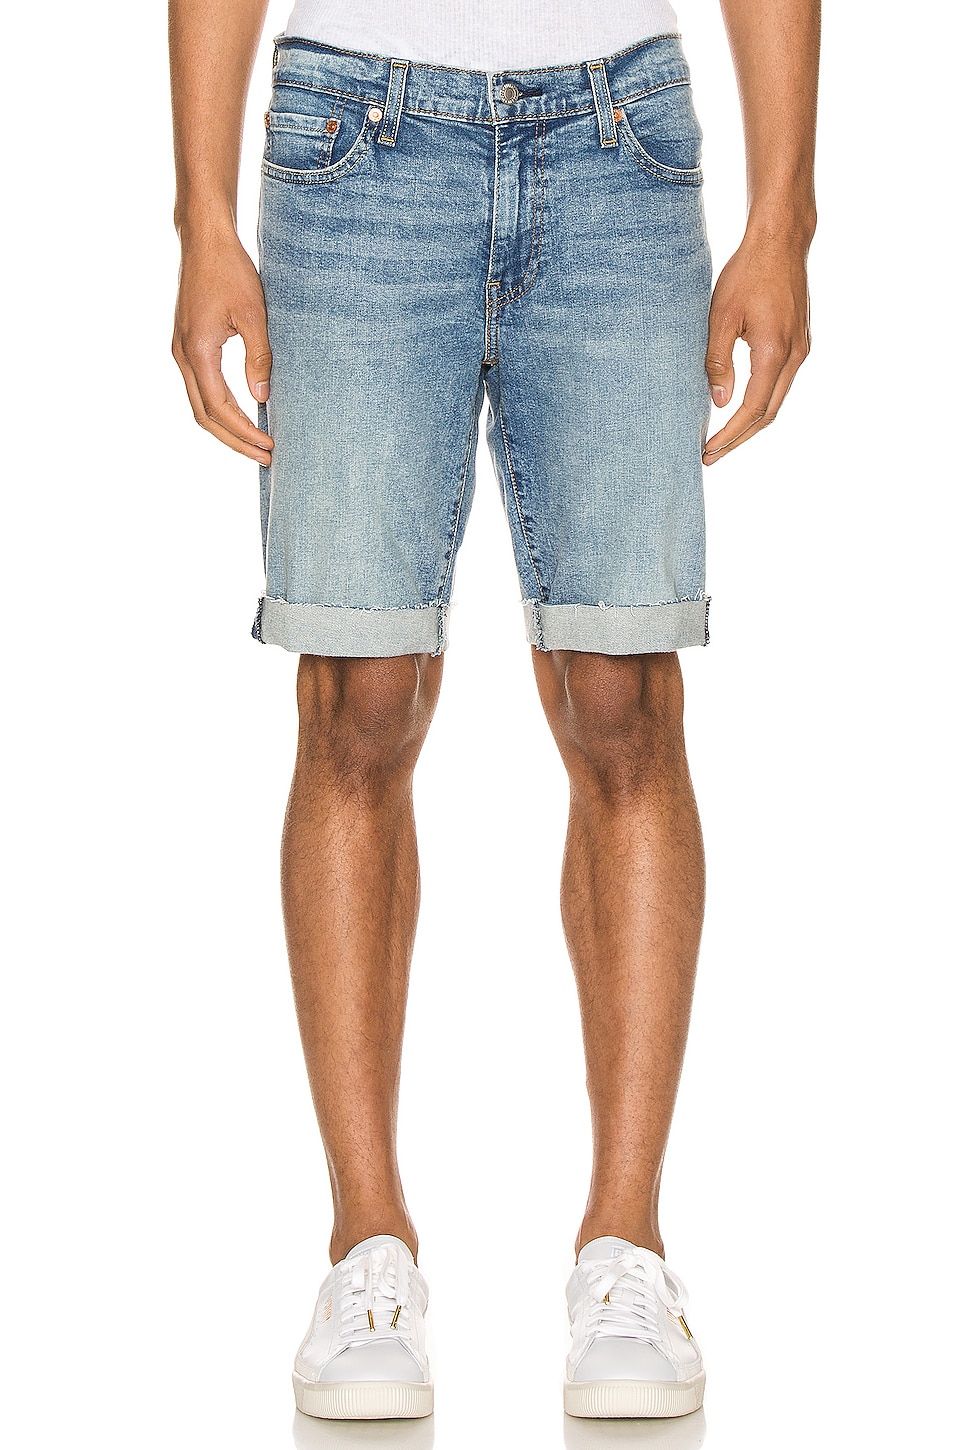 LEVI'S Premium 511 Slim Cut Off Shorts 